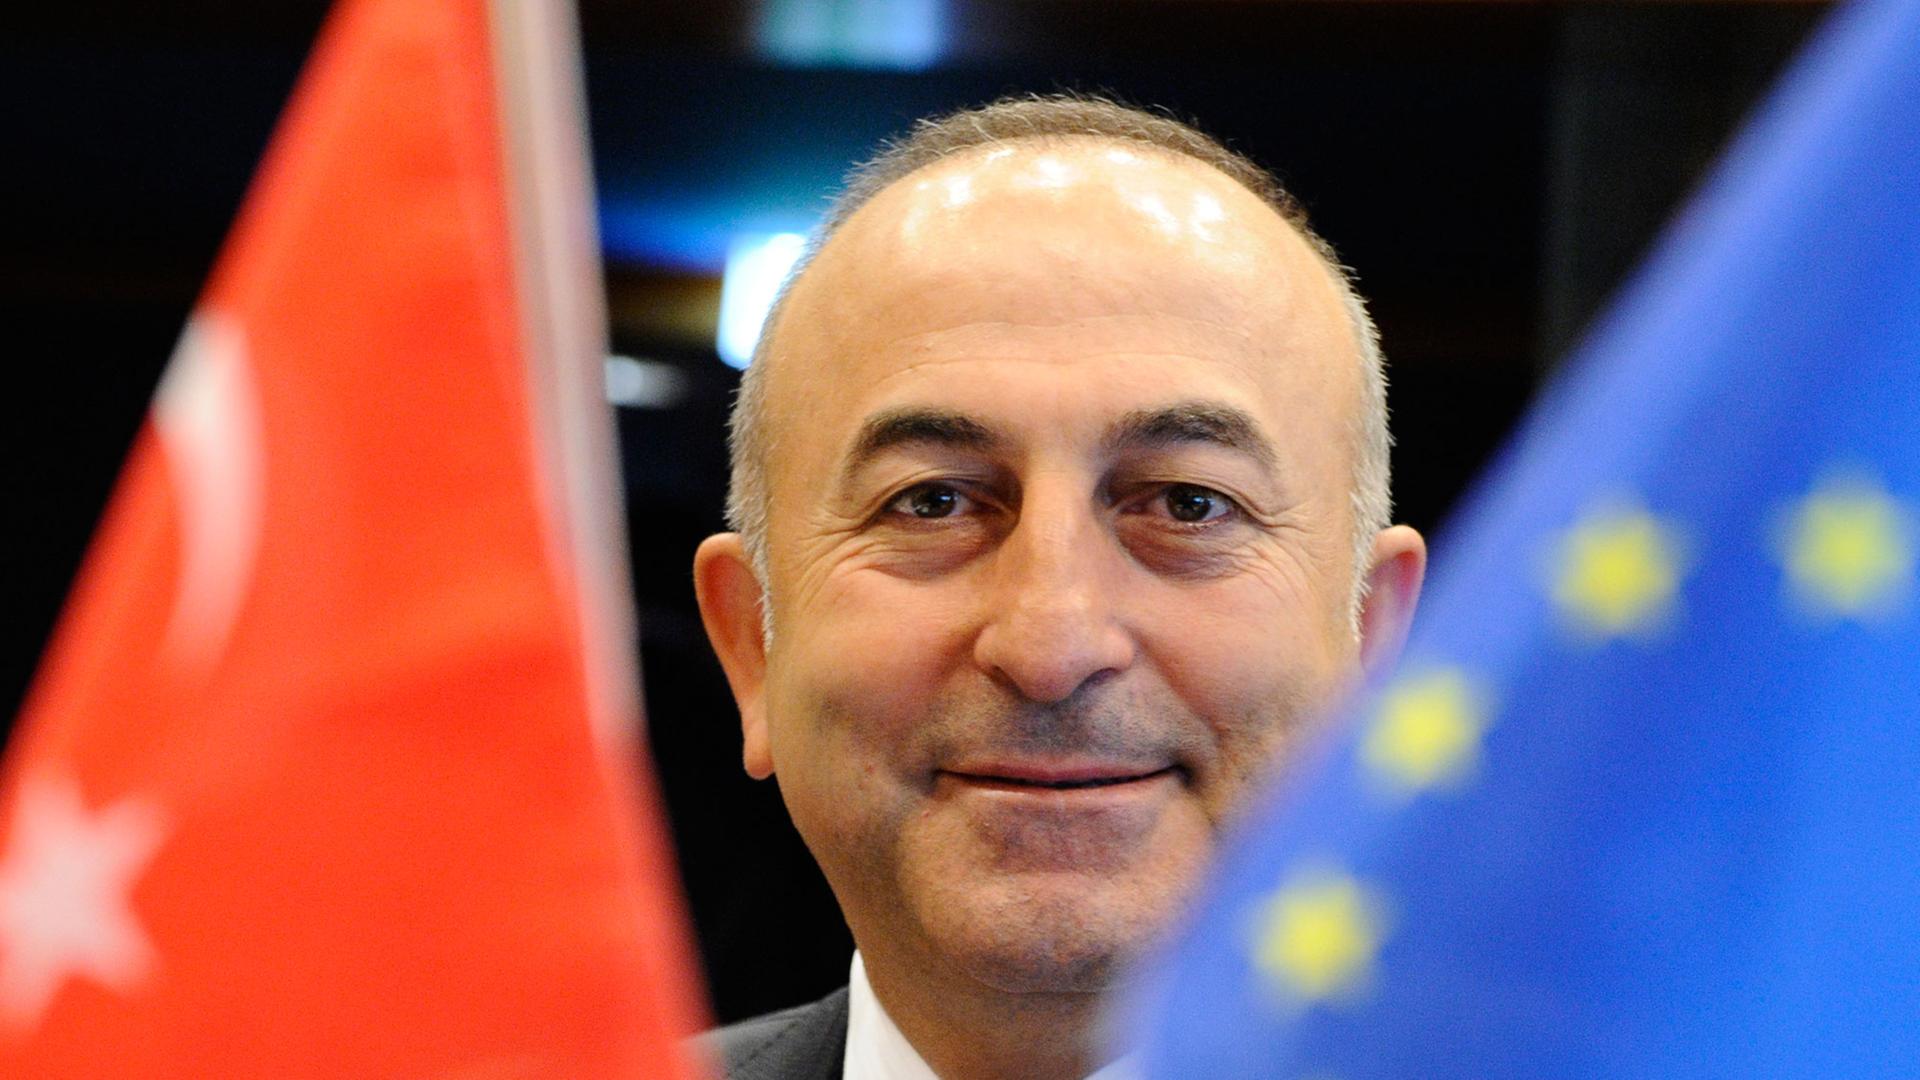 Der neue türkische Außenminister Mevlut Cavusoglu lächelt am 23.06.2014 zwischen einer Türkei- und einer EU-Flagge, kurz vor Beginn eines Treffens des EU-Türkei-Assoziierungsrates in Luxemburg.